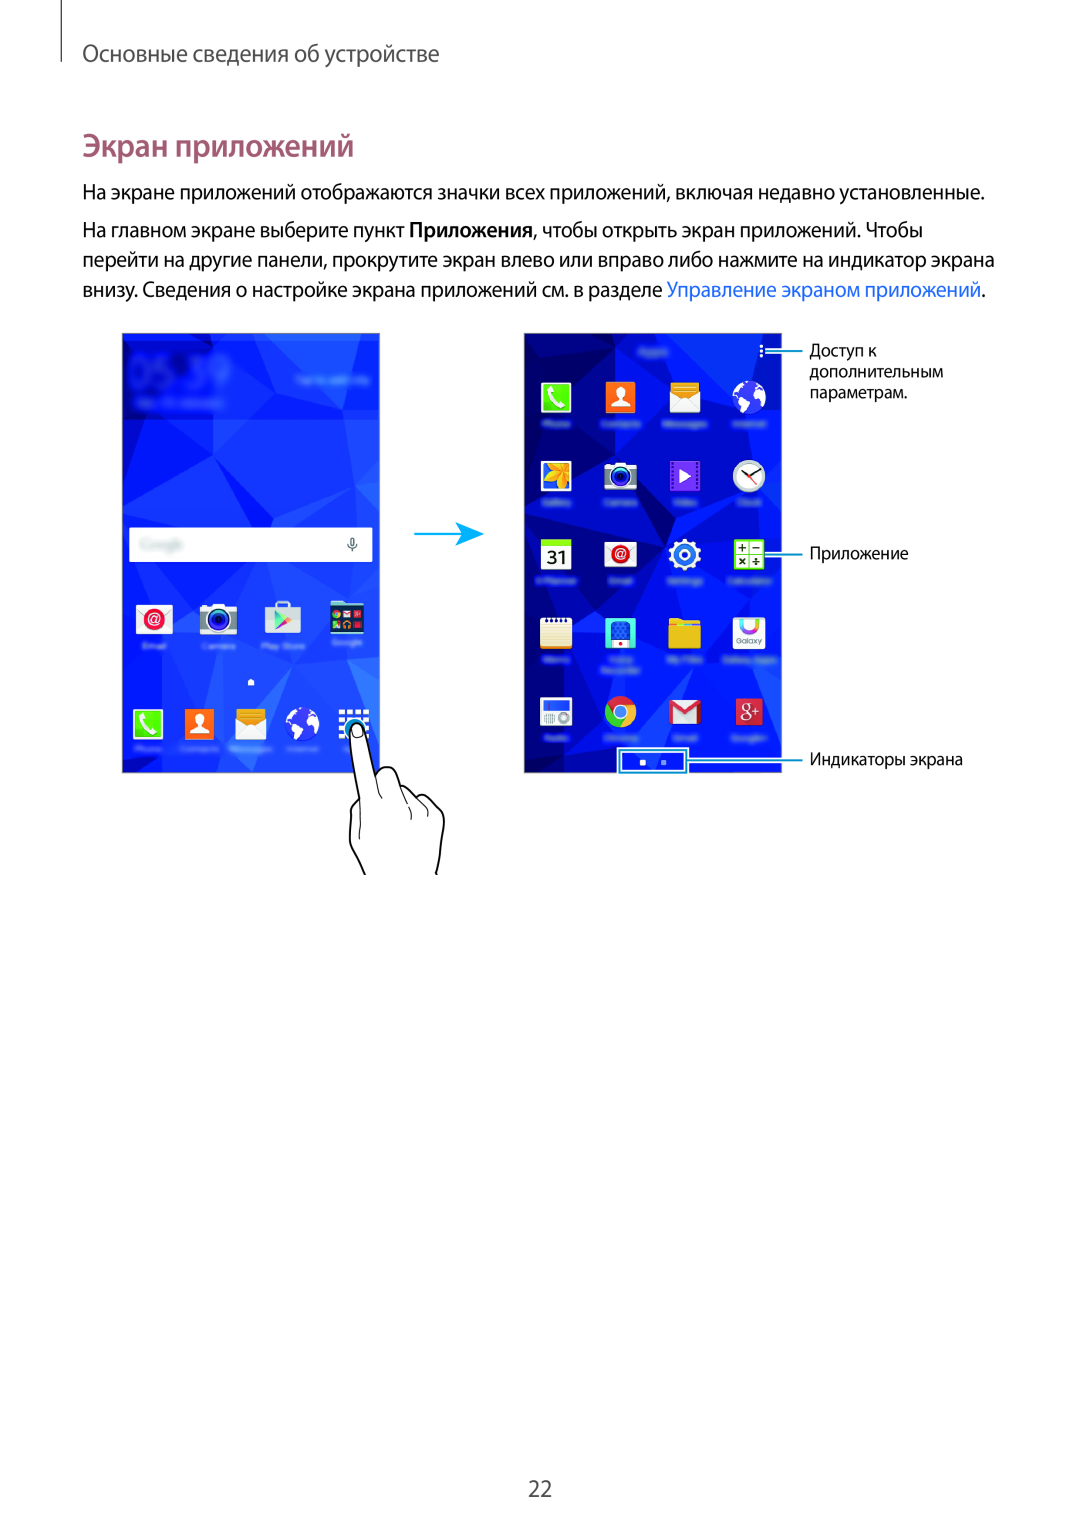 Samsung SM-G531FZWASER, SM-G531FZWASEB Экран приложений, Основные сведения об устройстве, Приложение Индикаторы экрана 